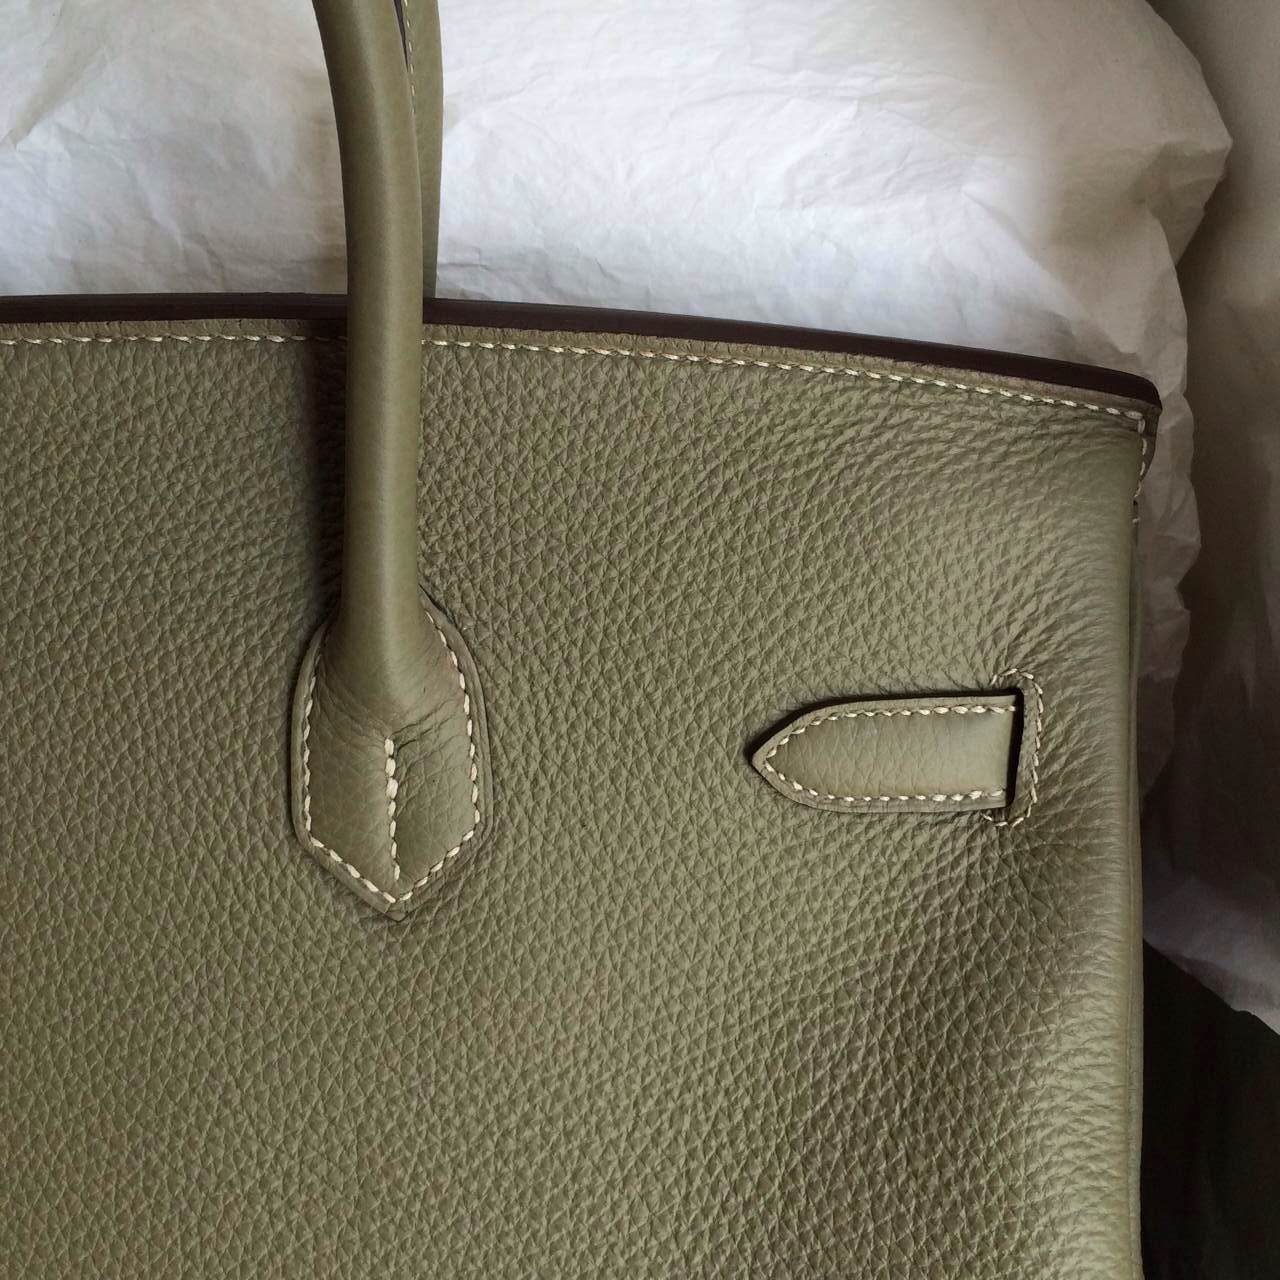 Hand Stitching Hermes Birkin Bags 35cm France Togo Leather CK64 Celadon Color